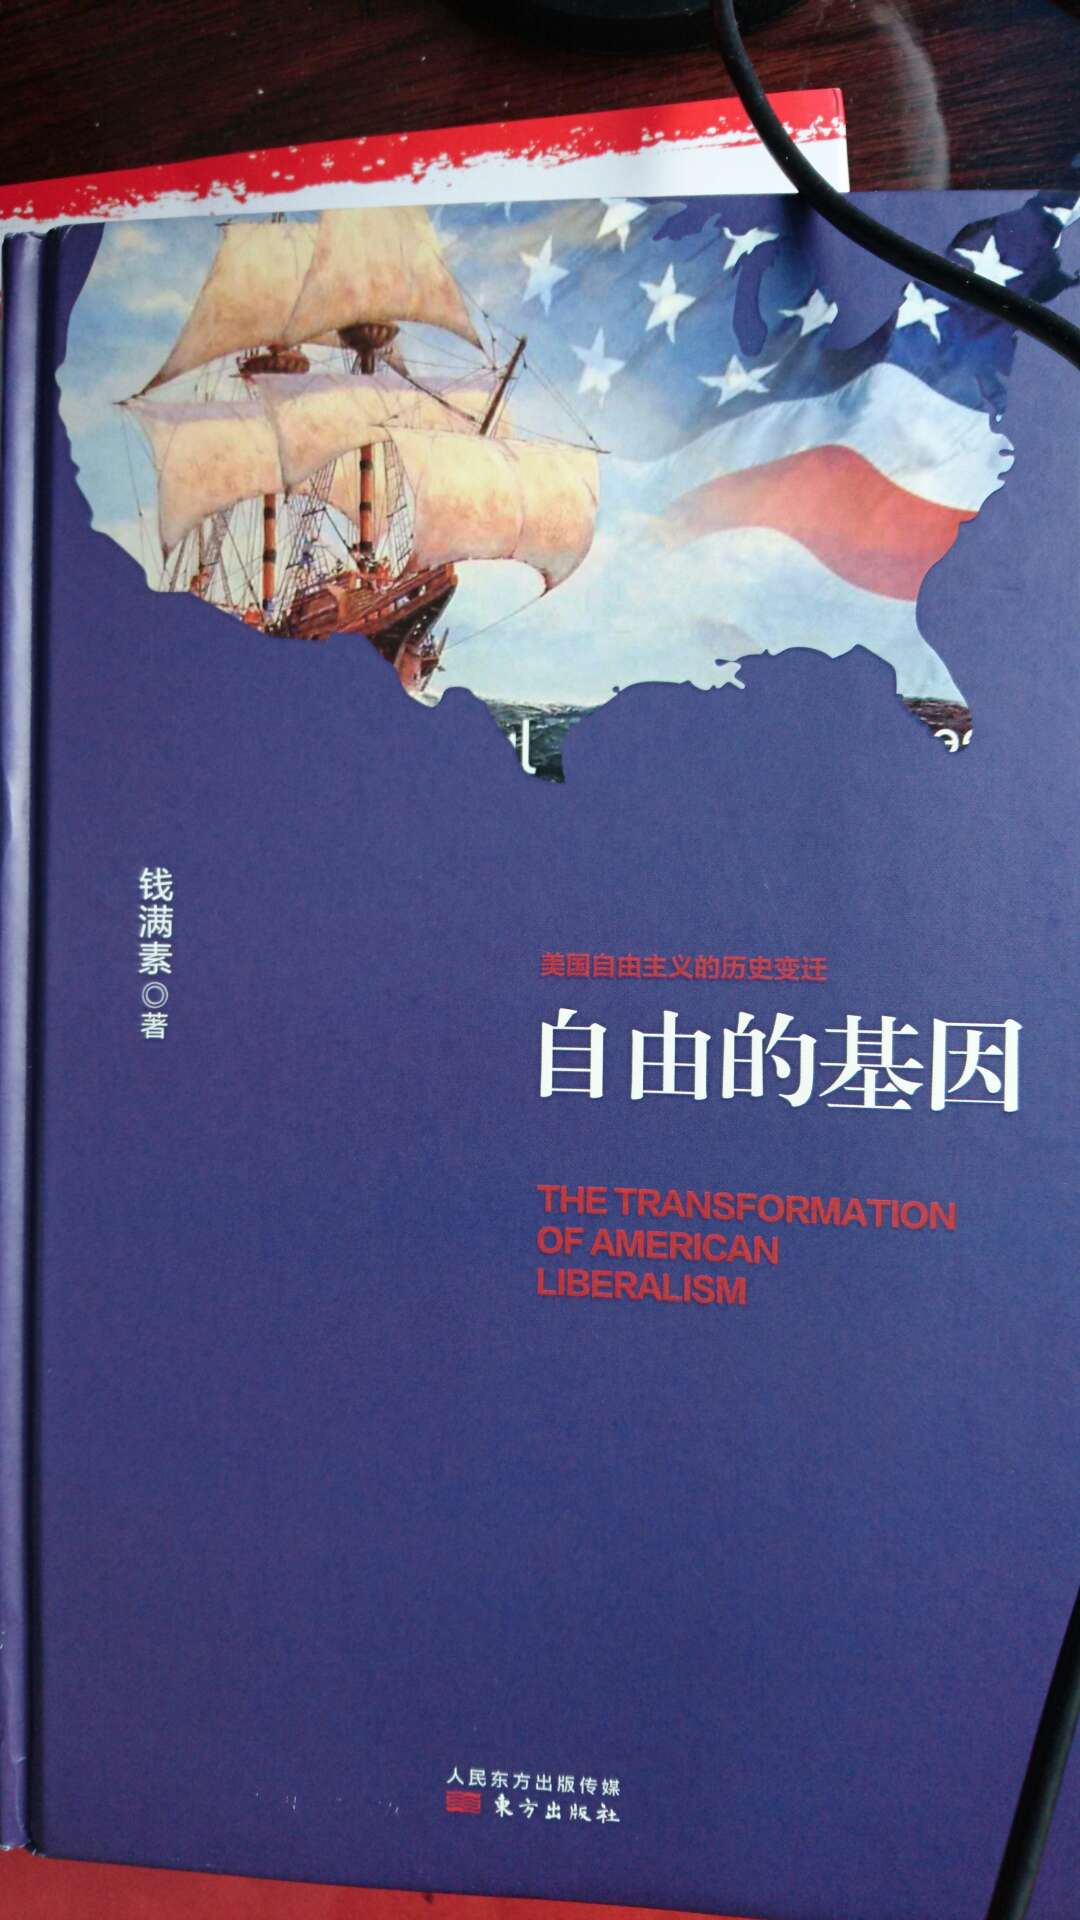 研究，著有《爱默生和中国——对个人主义的反思》《美国文明》《美国自由主义的历史变迁》；论文集《飞出笼子去唱》《一个大众社会的诞生》；主编过《年轻的美利坚》《我有一个梦想》《我，生为女人》《韦斯特小说集》等书，发表过不少有关美国历史、文学、政治的论文和文章